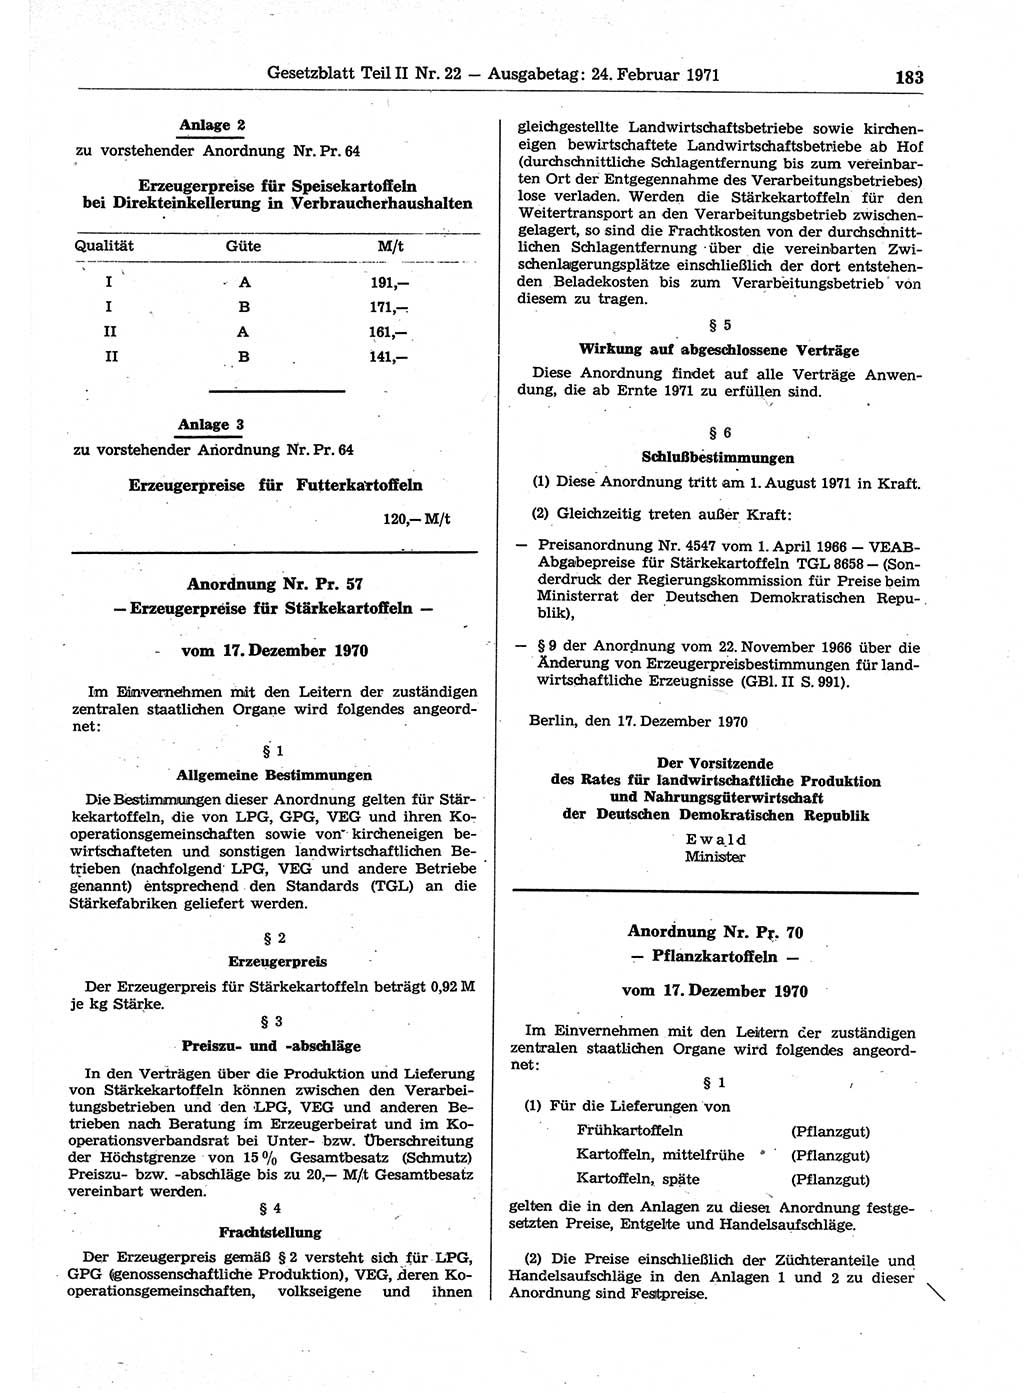 Gesetzblatt (GBl.) der Deutschen Demokratischen Republik (DDR) Teil ⅠⅠ 1971, Seite 183 (GBl. DDR ⅠⅠ 1971, S. 183)